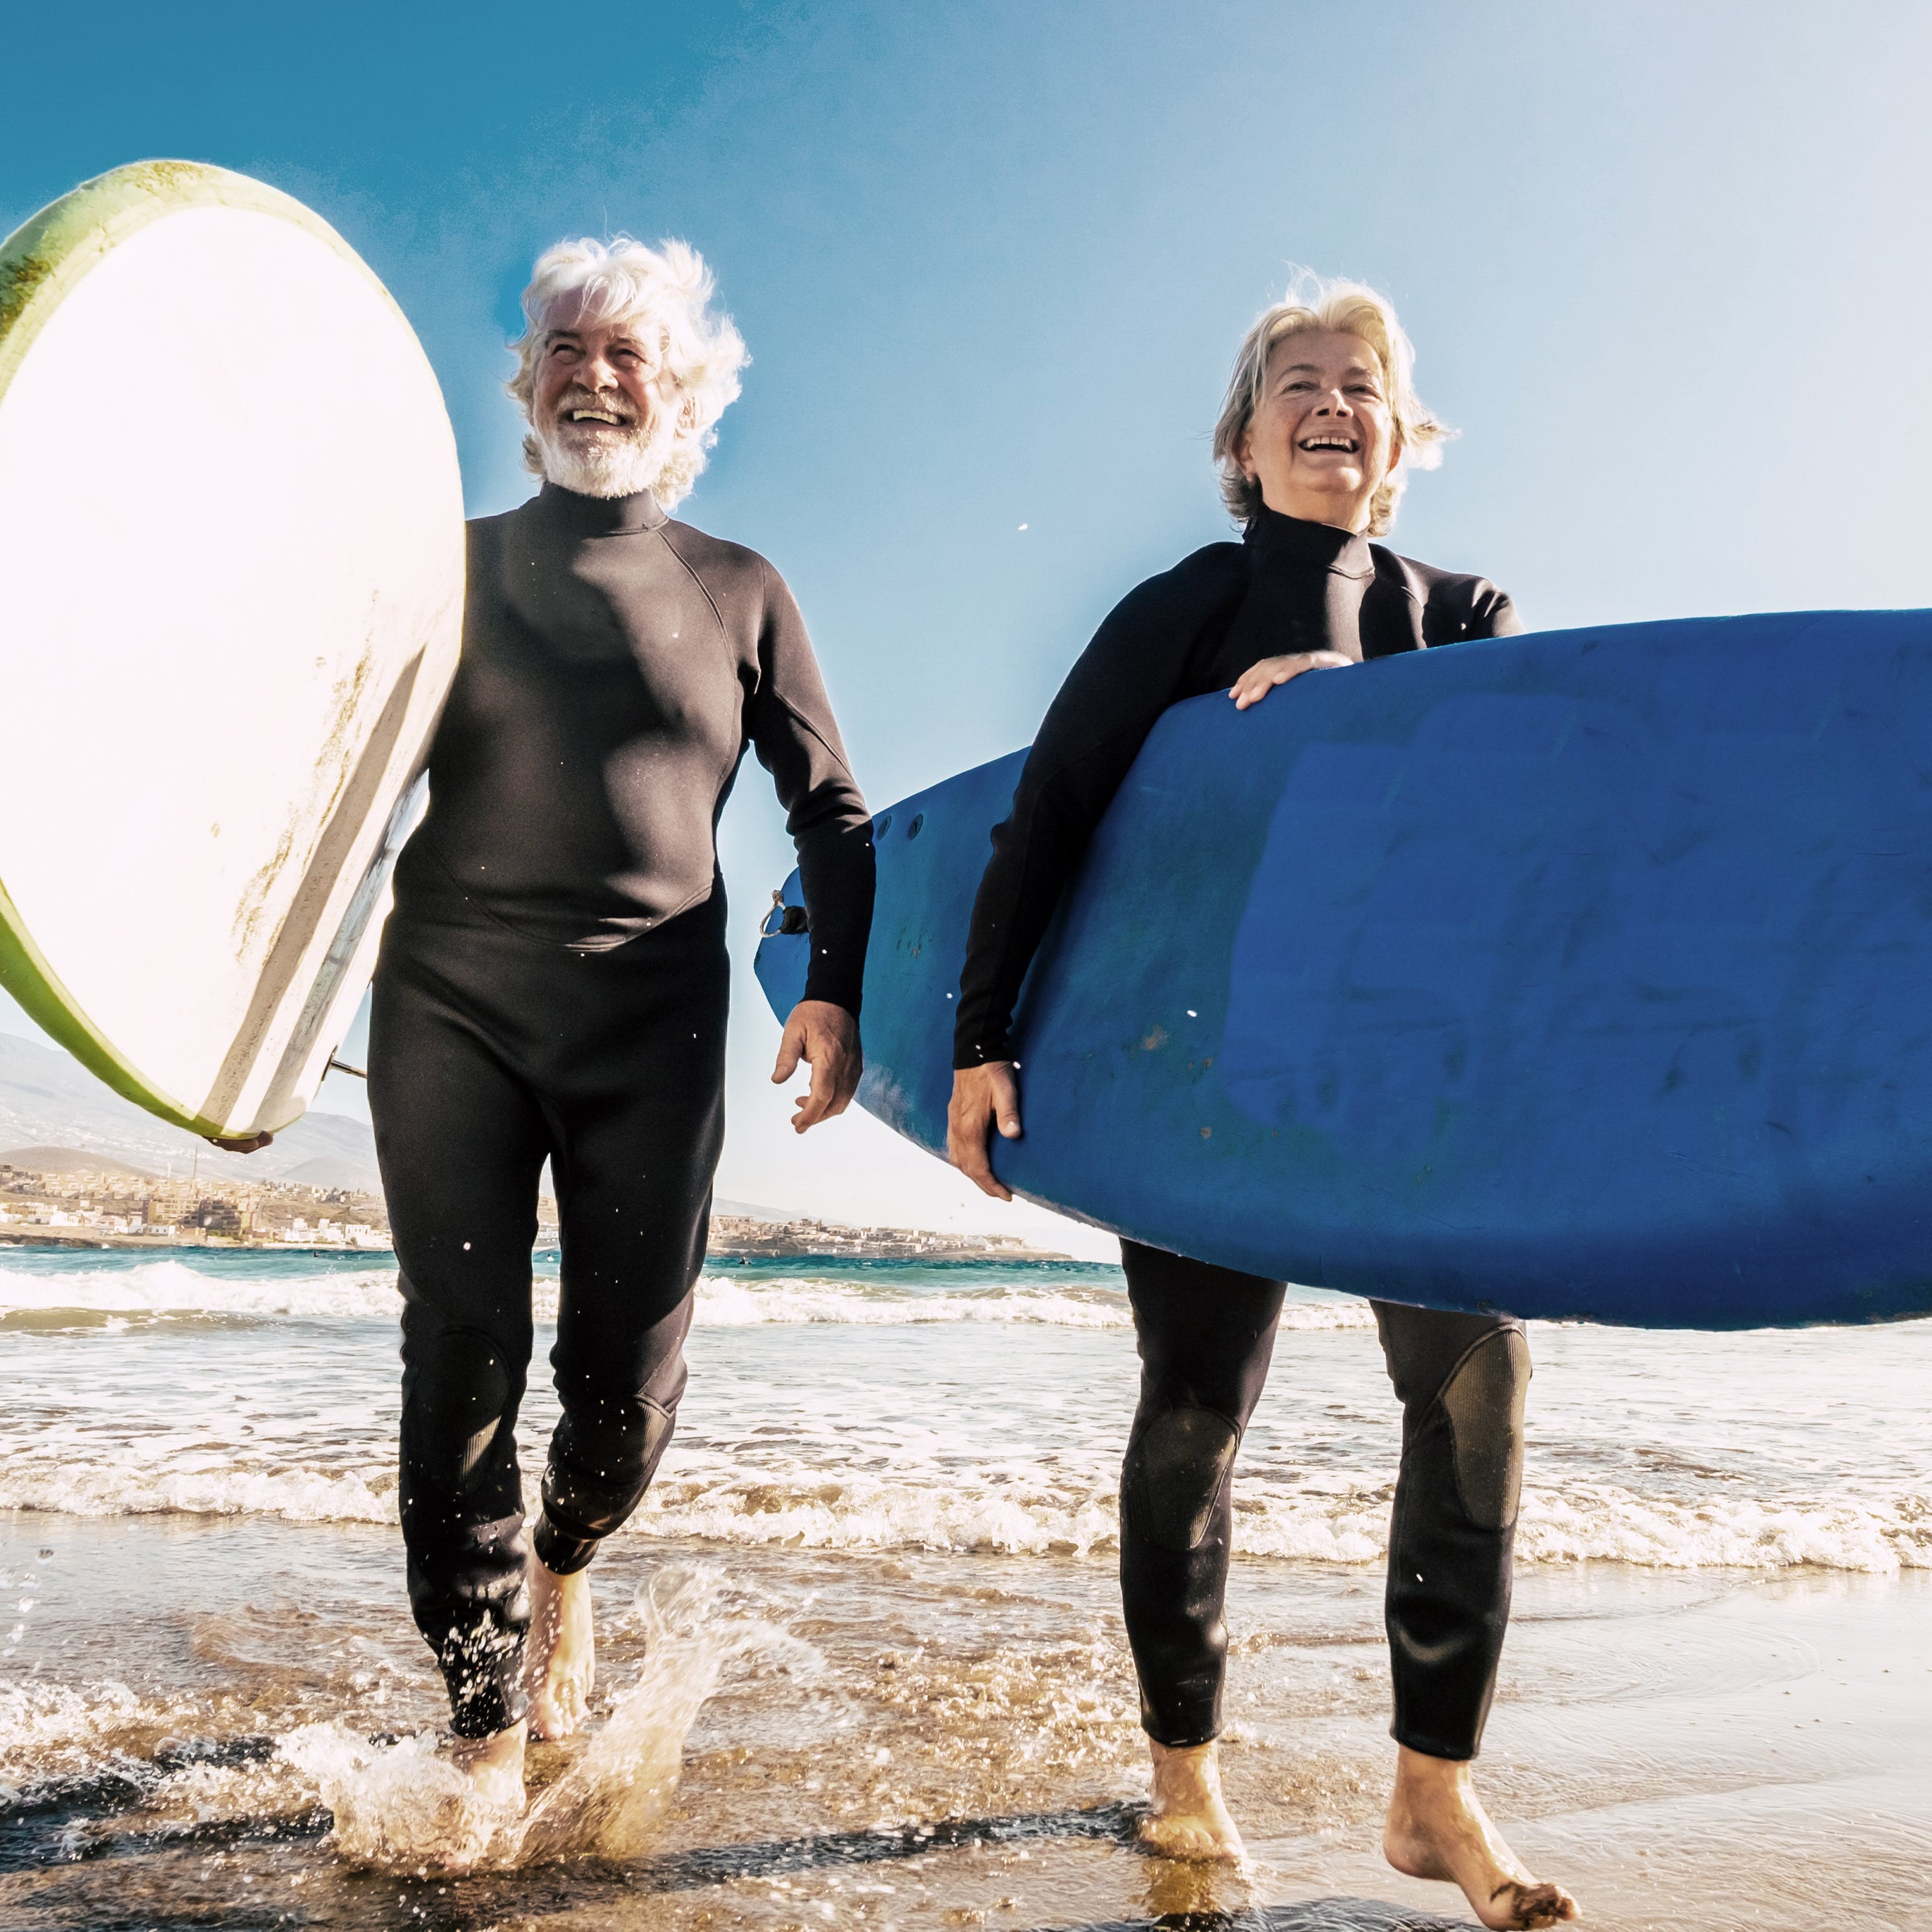 Zwei ältere Menschen mit Surfbrettern am Meer